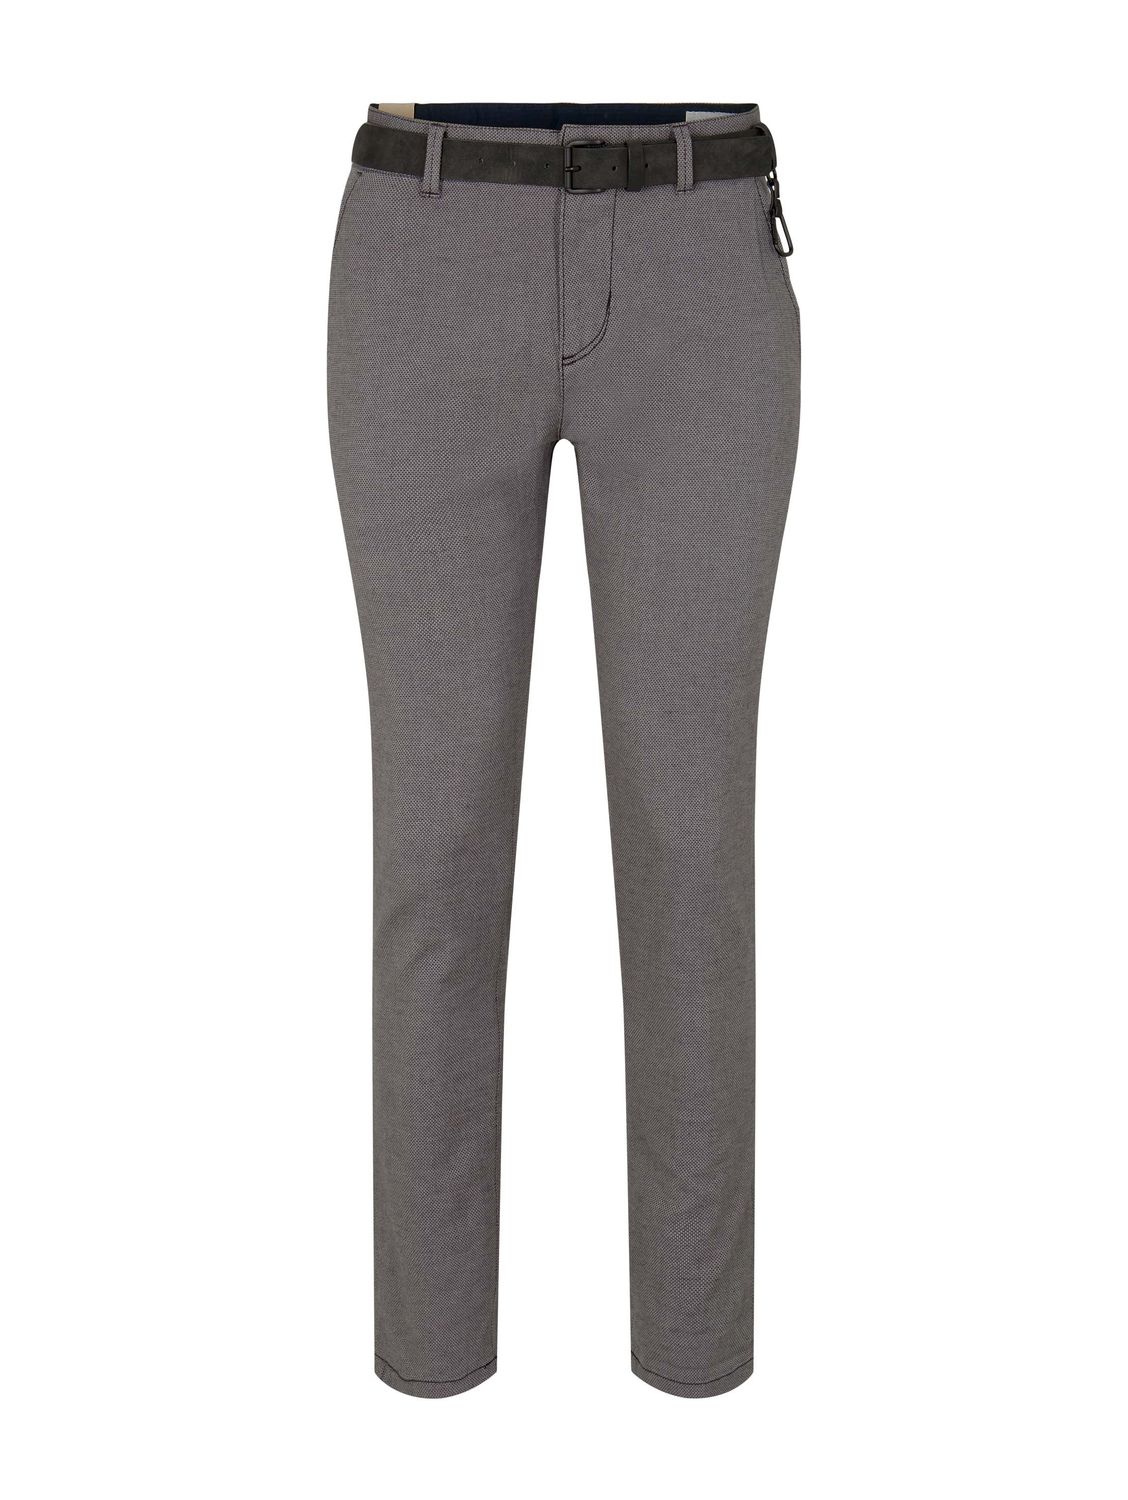 Тканевые брюки TOM TAILOR Denim Stoff/Chino Chino mit Gürtel regular/straight, серый толстовка tom tailor размер l серый